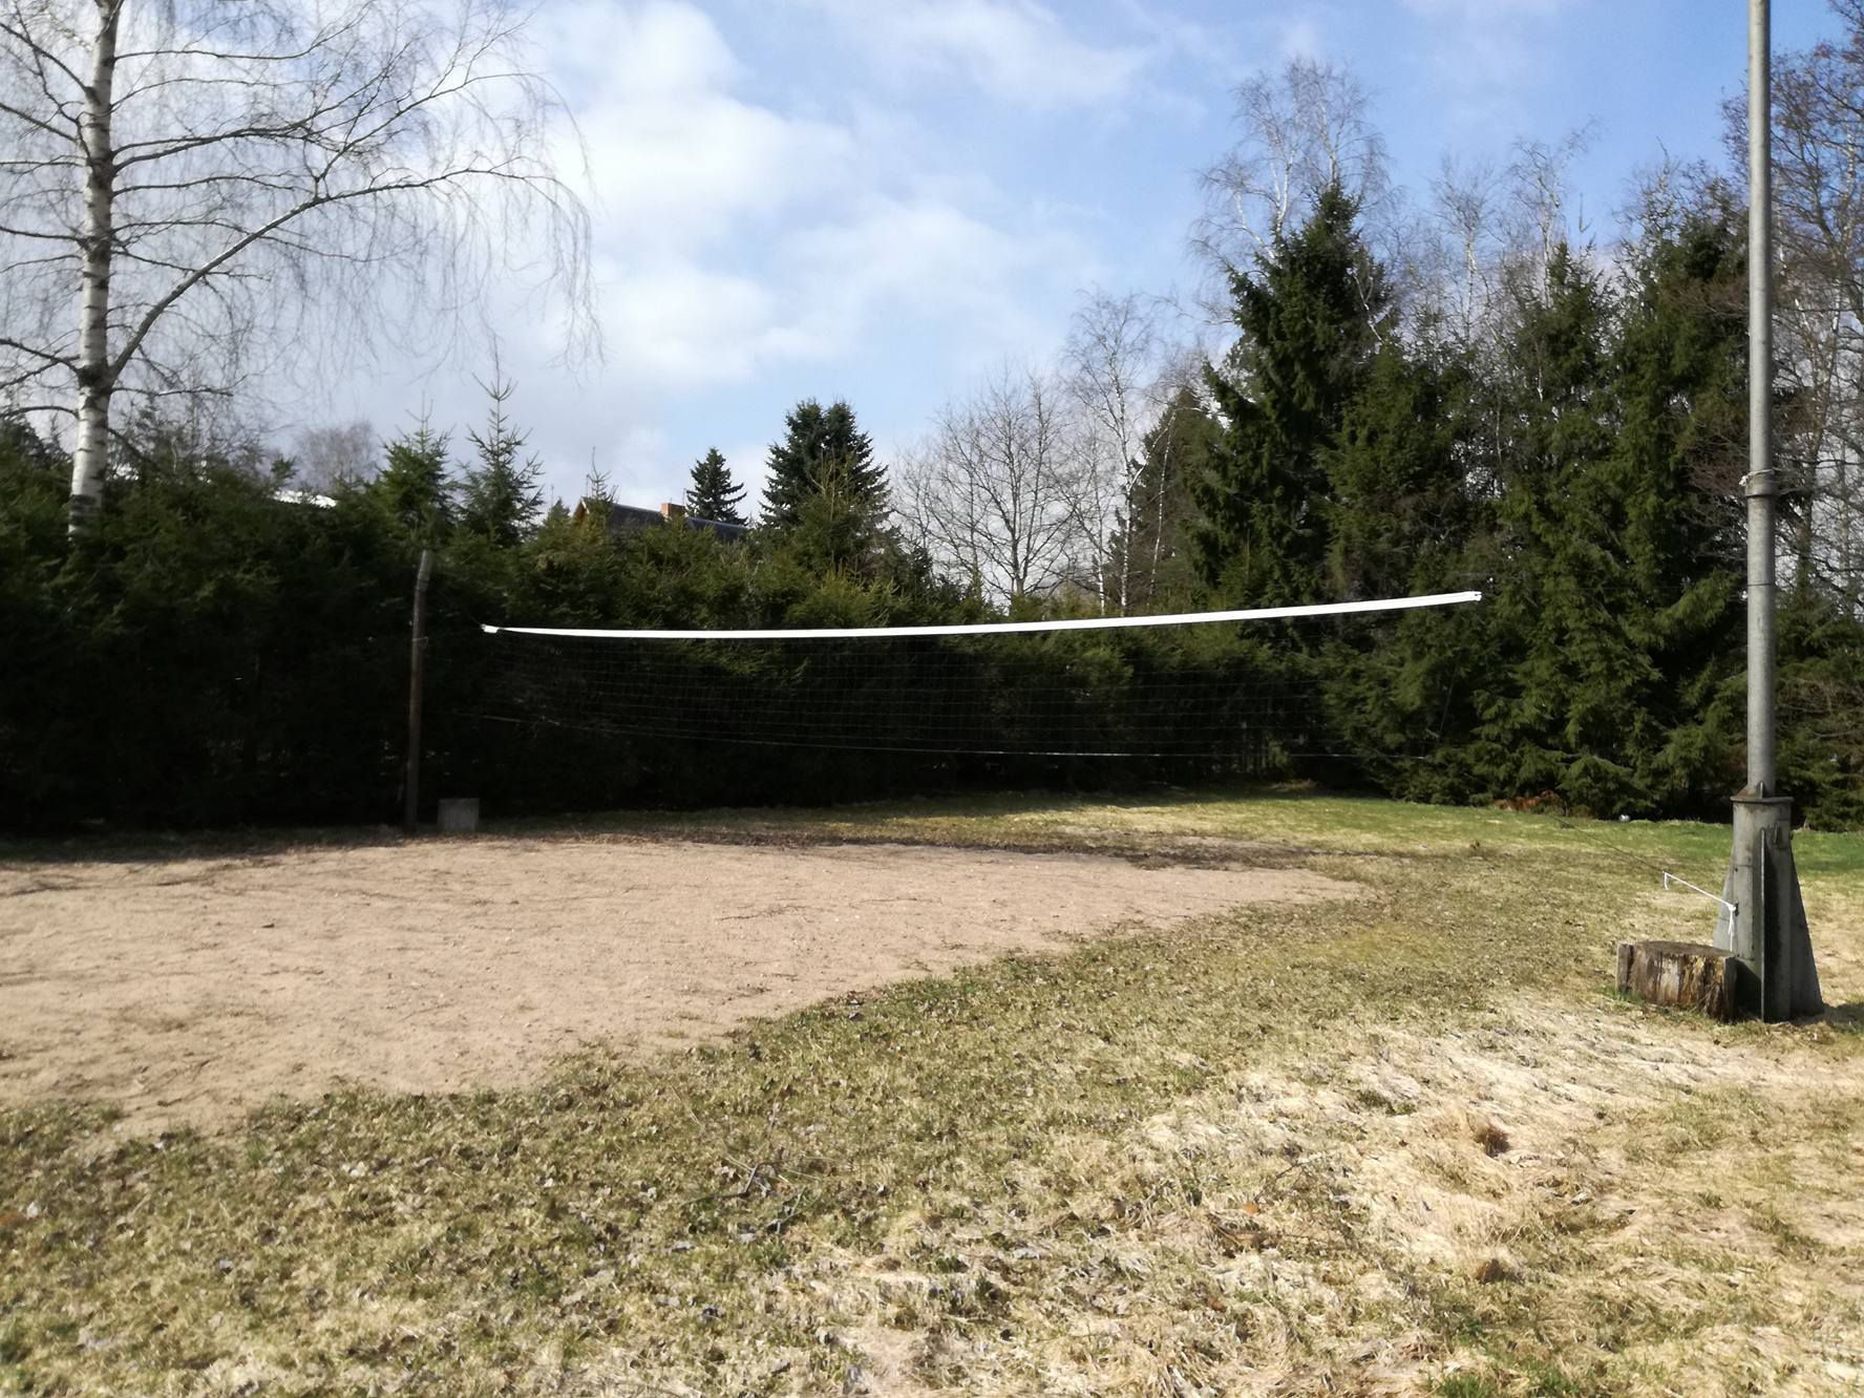 Kulunud võrkpalliplats Äksi külas Tartumaal ootamas värskenduskuuri.